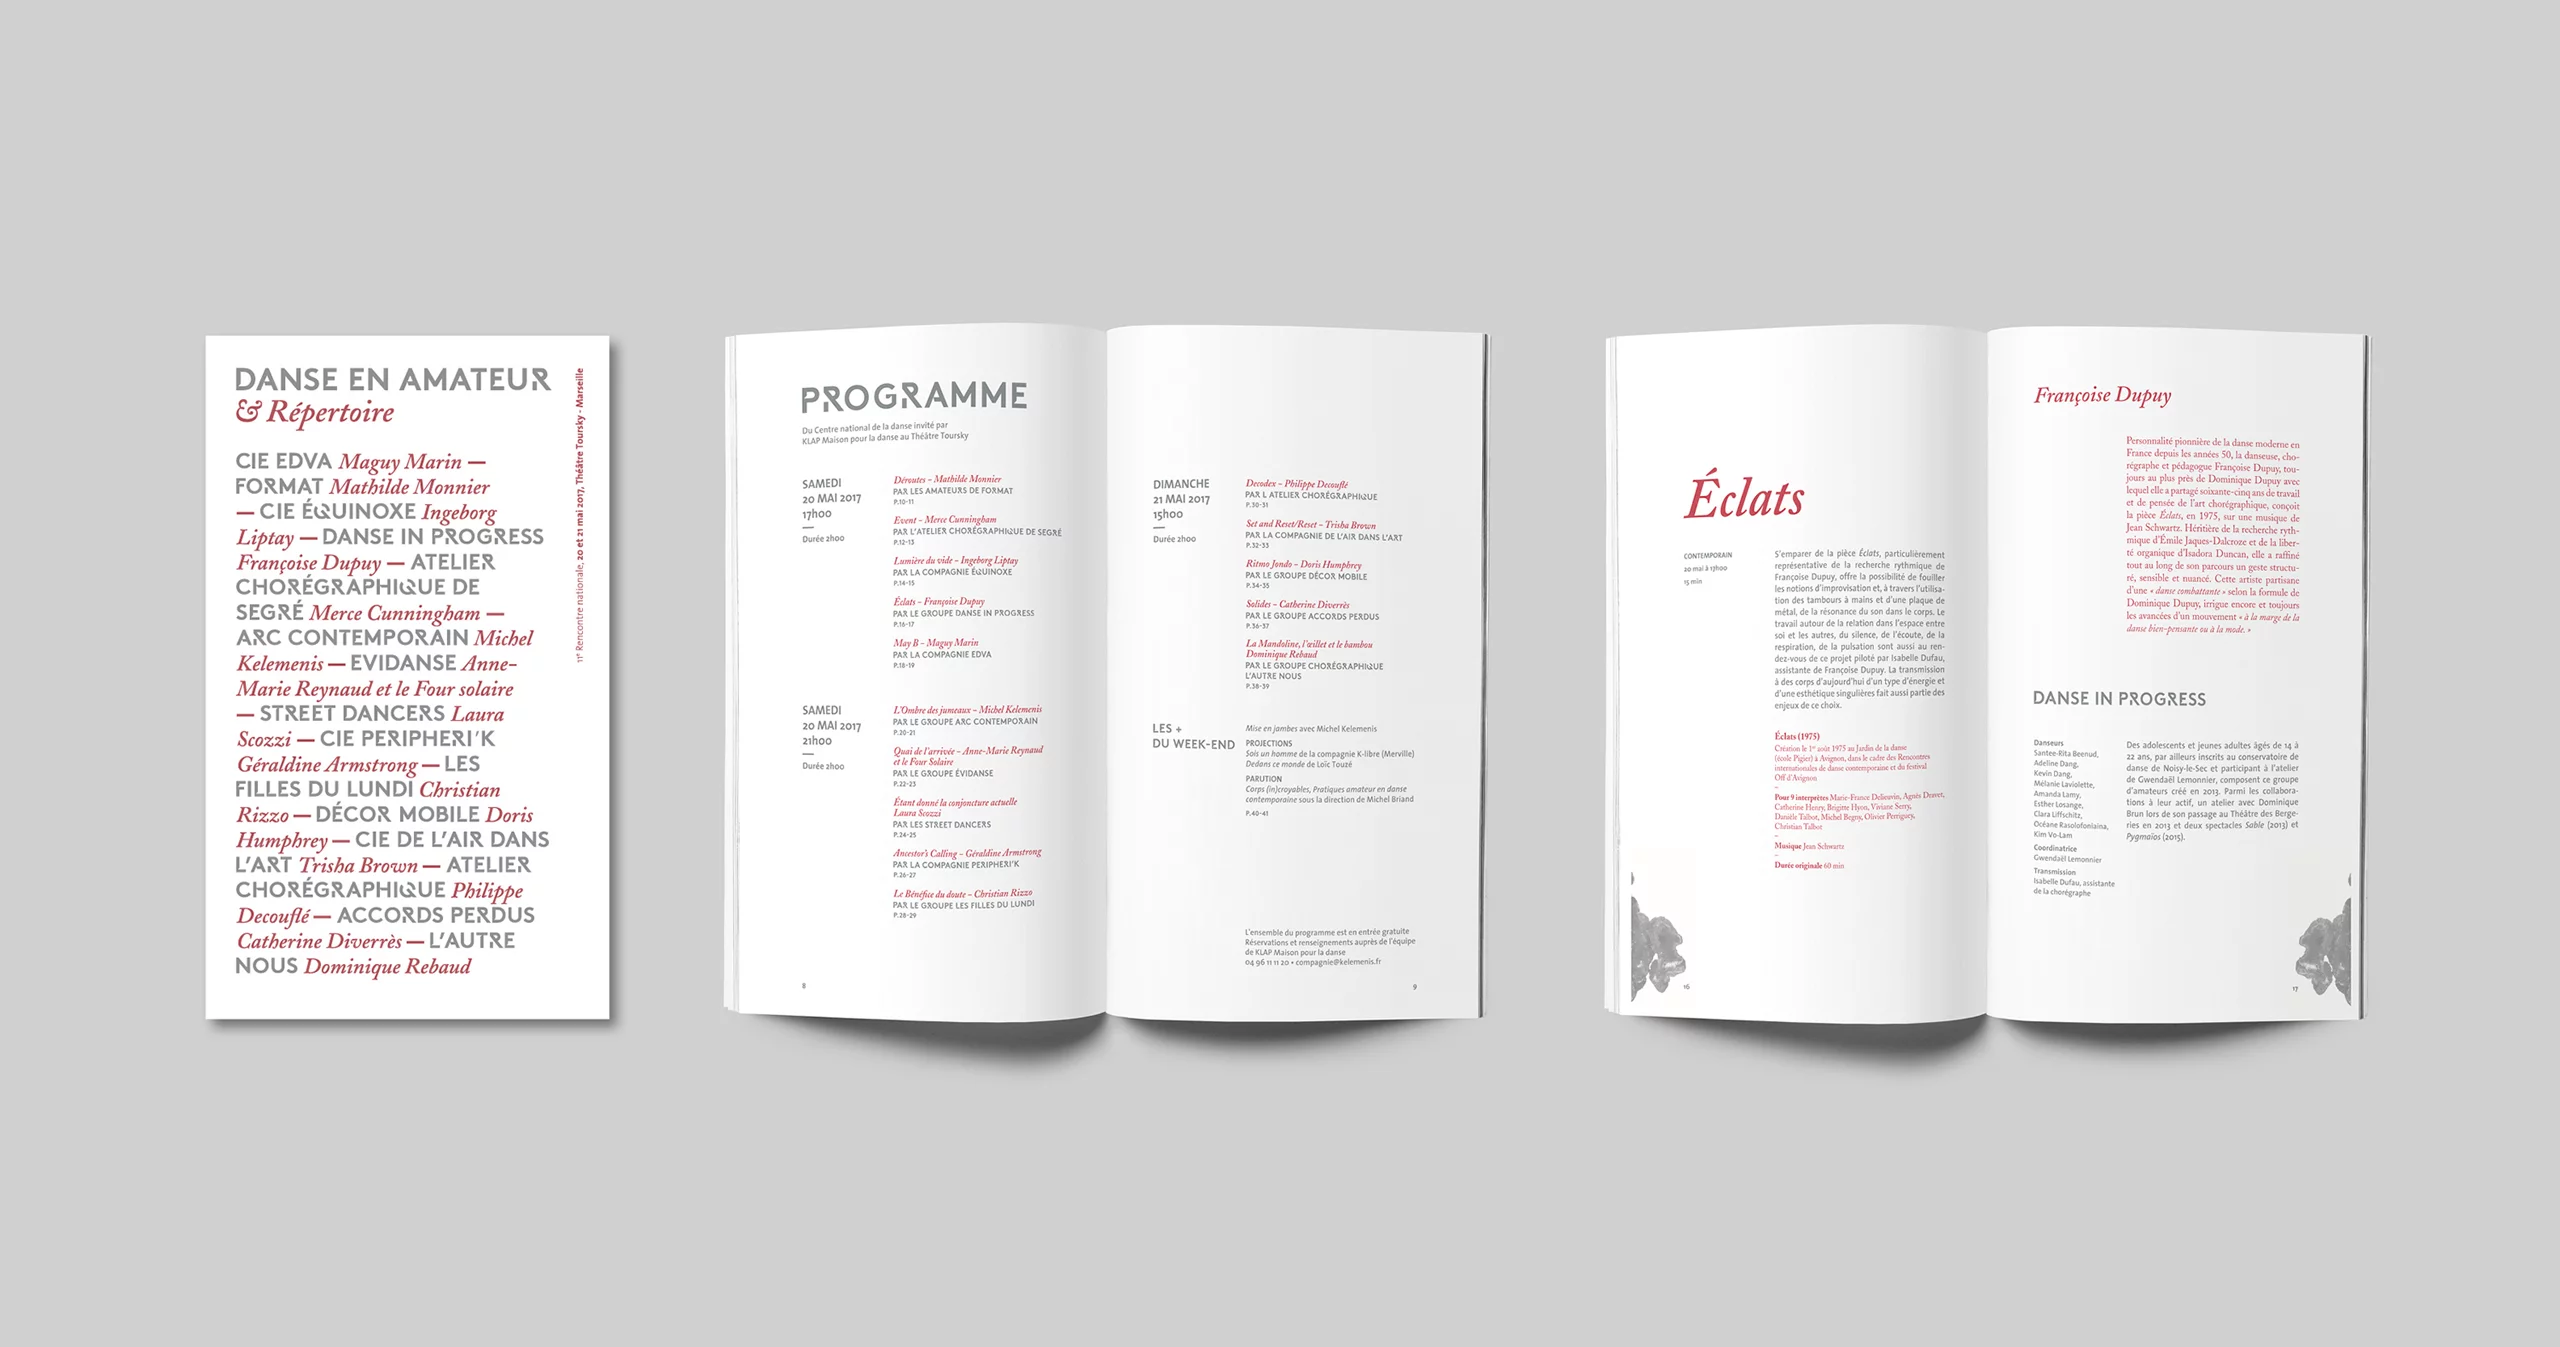 Couverture et page intérieure de la brochure Danse en Amateur & Répertoire. Jeux de contrastes typographiques entre des lettres capitales et des lettres italiques